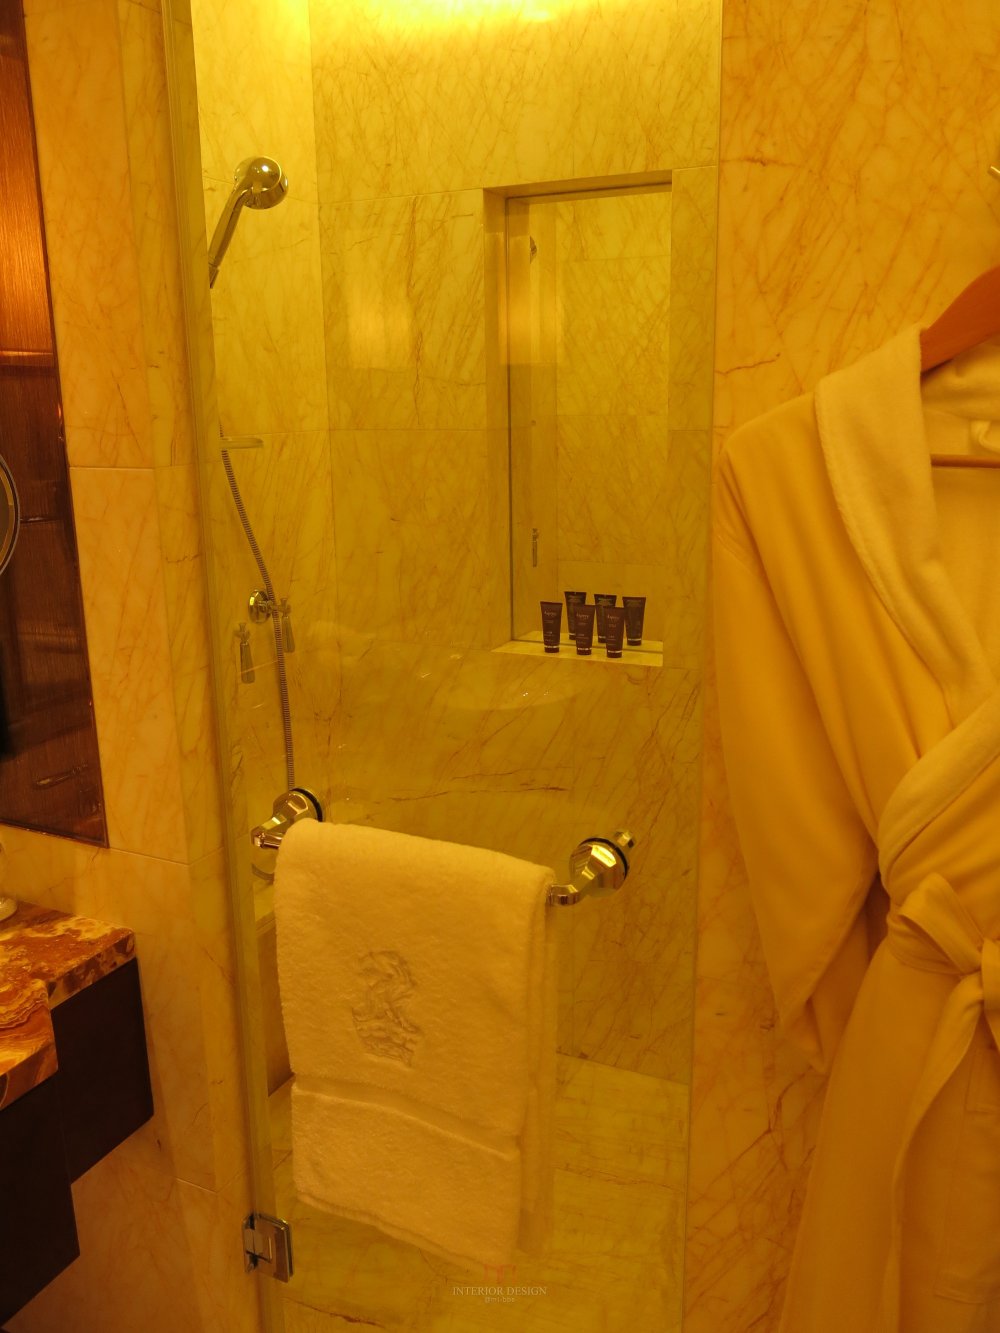 成都丽思卡尔顿酒店The Ritz-Carlton Chengdu(欢迎更新,高分奖励)_IMG_4100.JPG